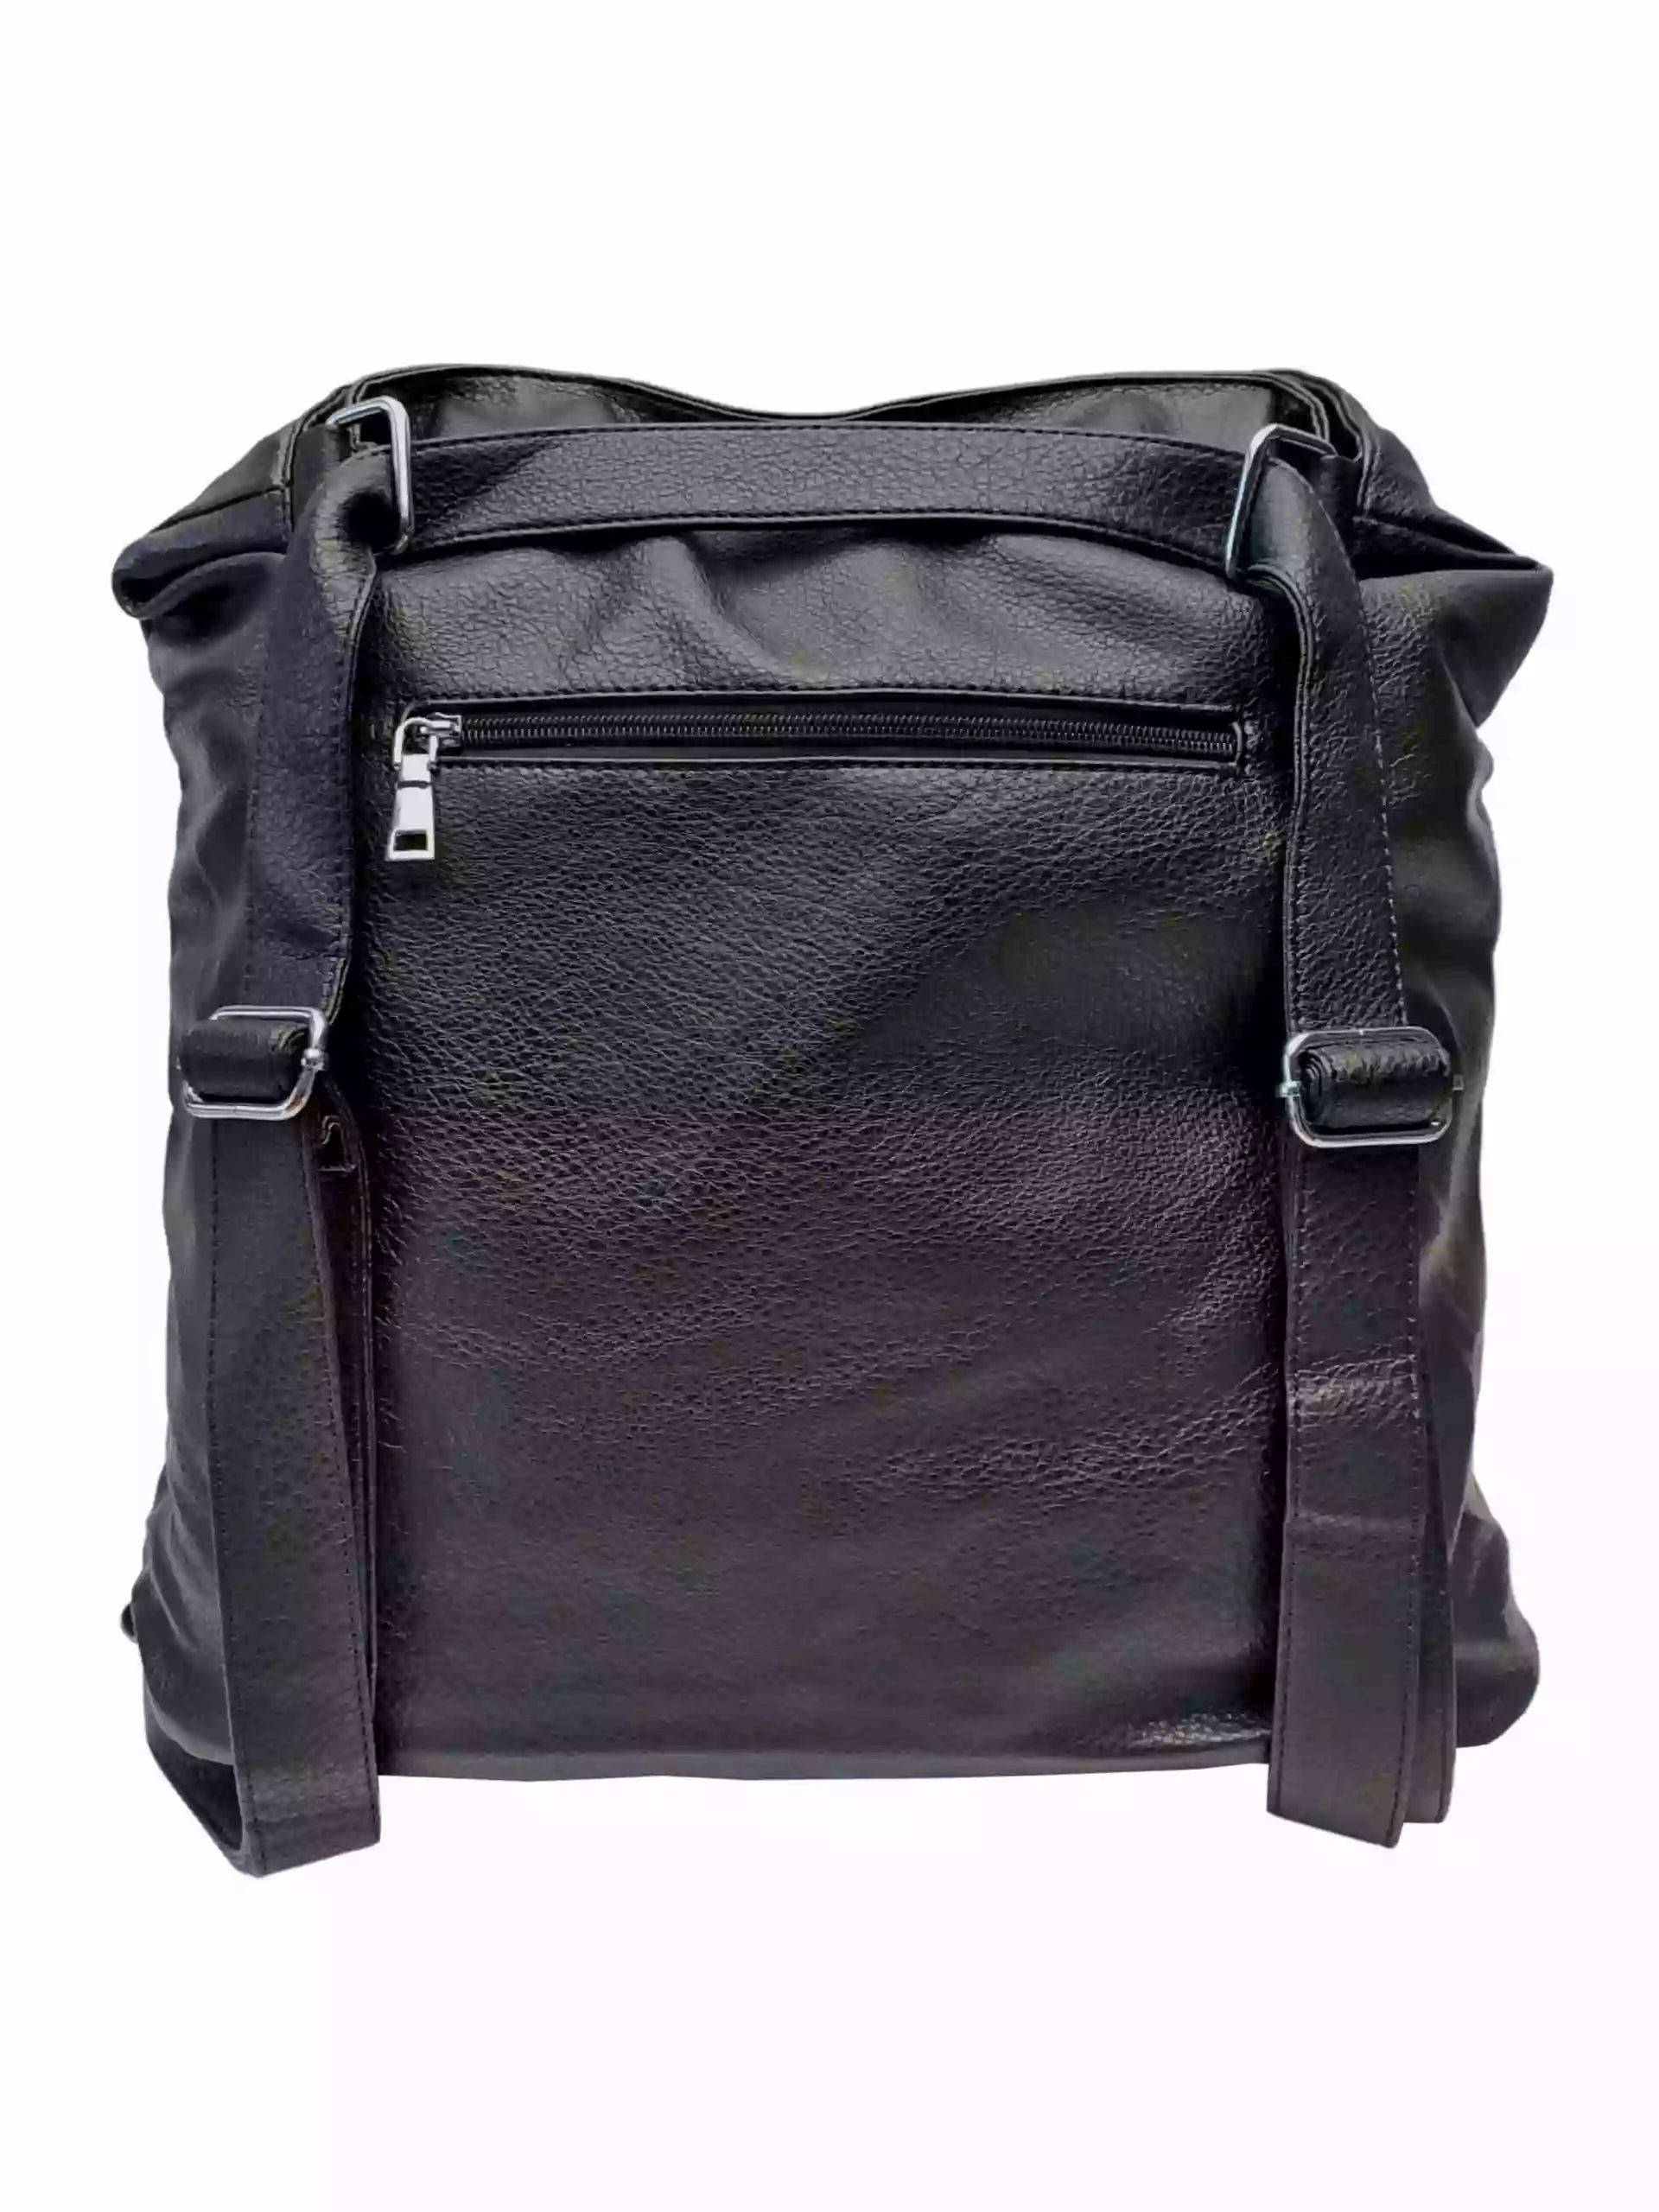 Černá kabelka a batoh v jednom se slušivými kapsami, Co & Coo Fashion, 0957, zadní strana kabelky a batohu v jednom s popruhy